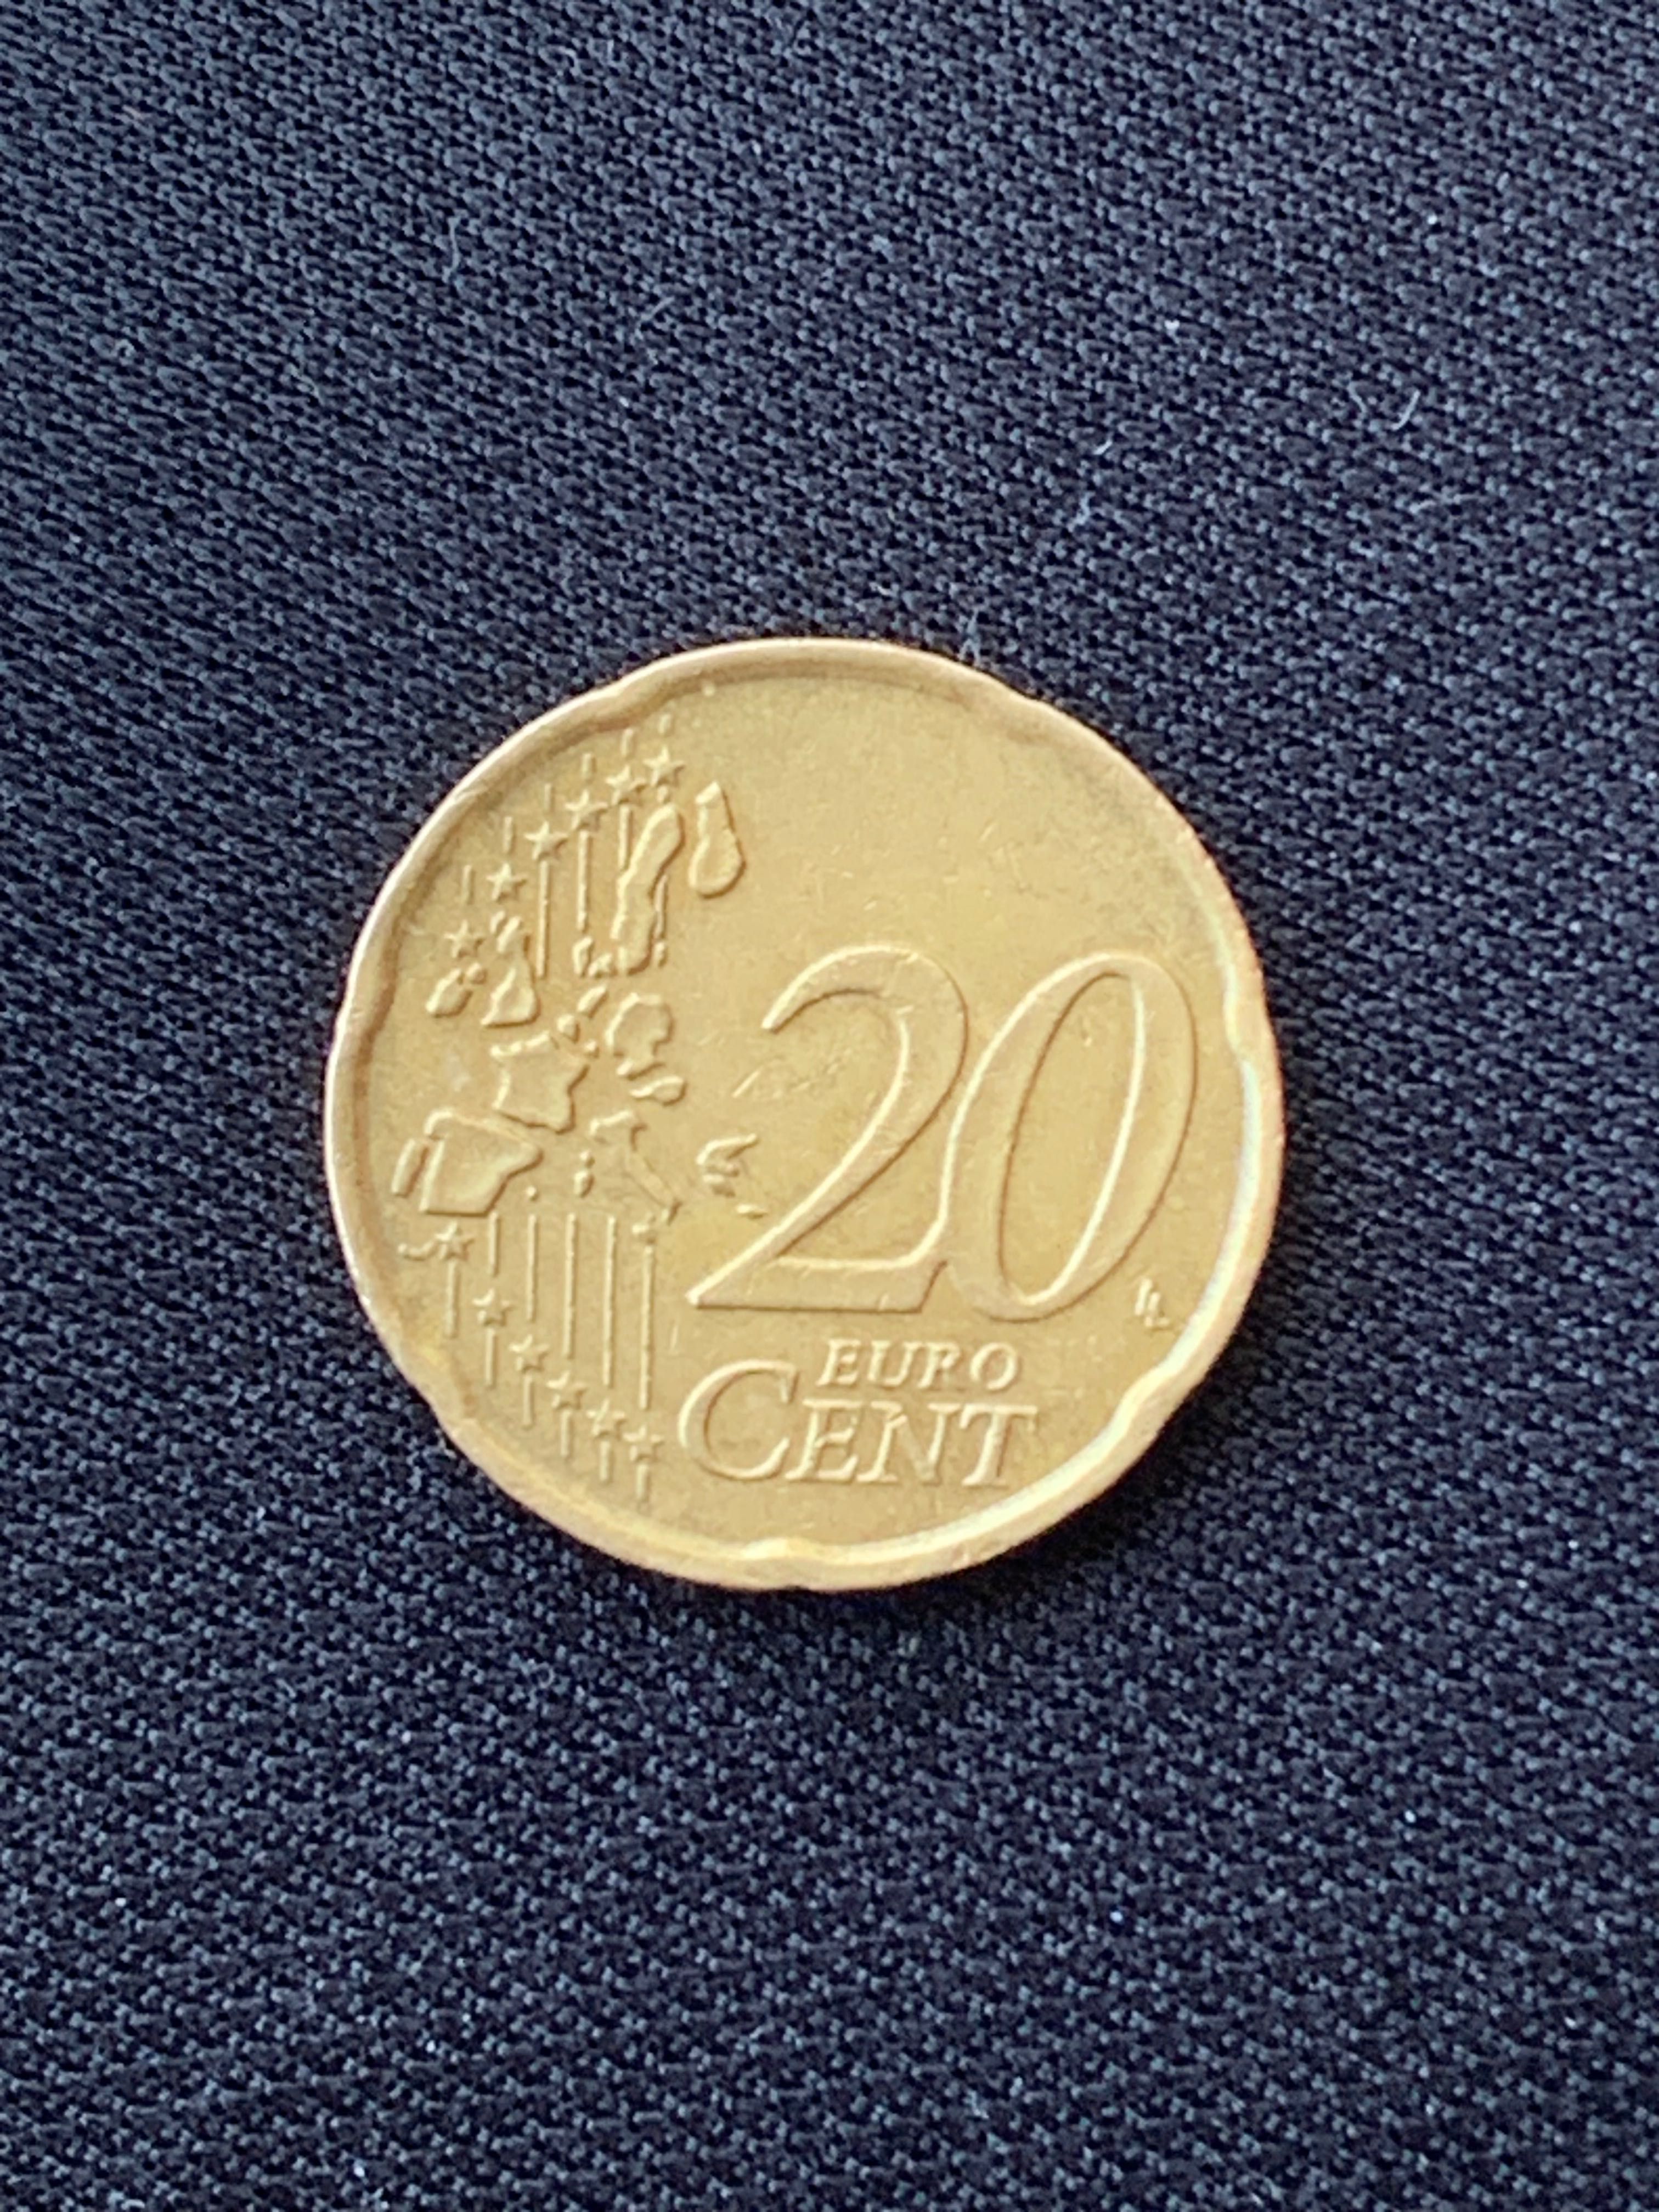 Moeda rara Italiana 20 Euro Cent ano 2002